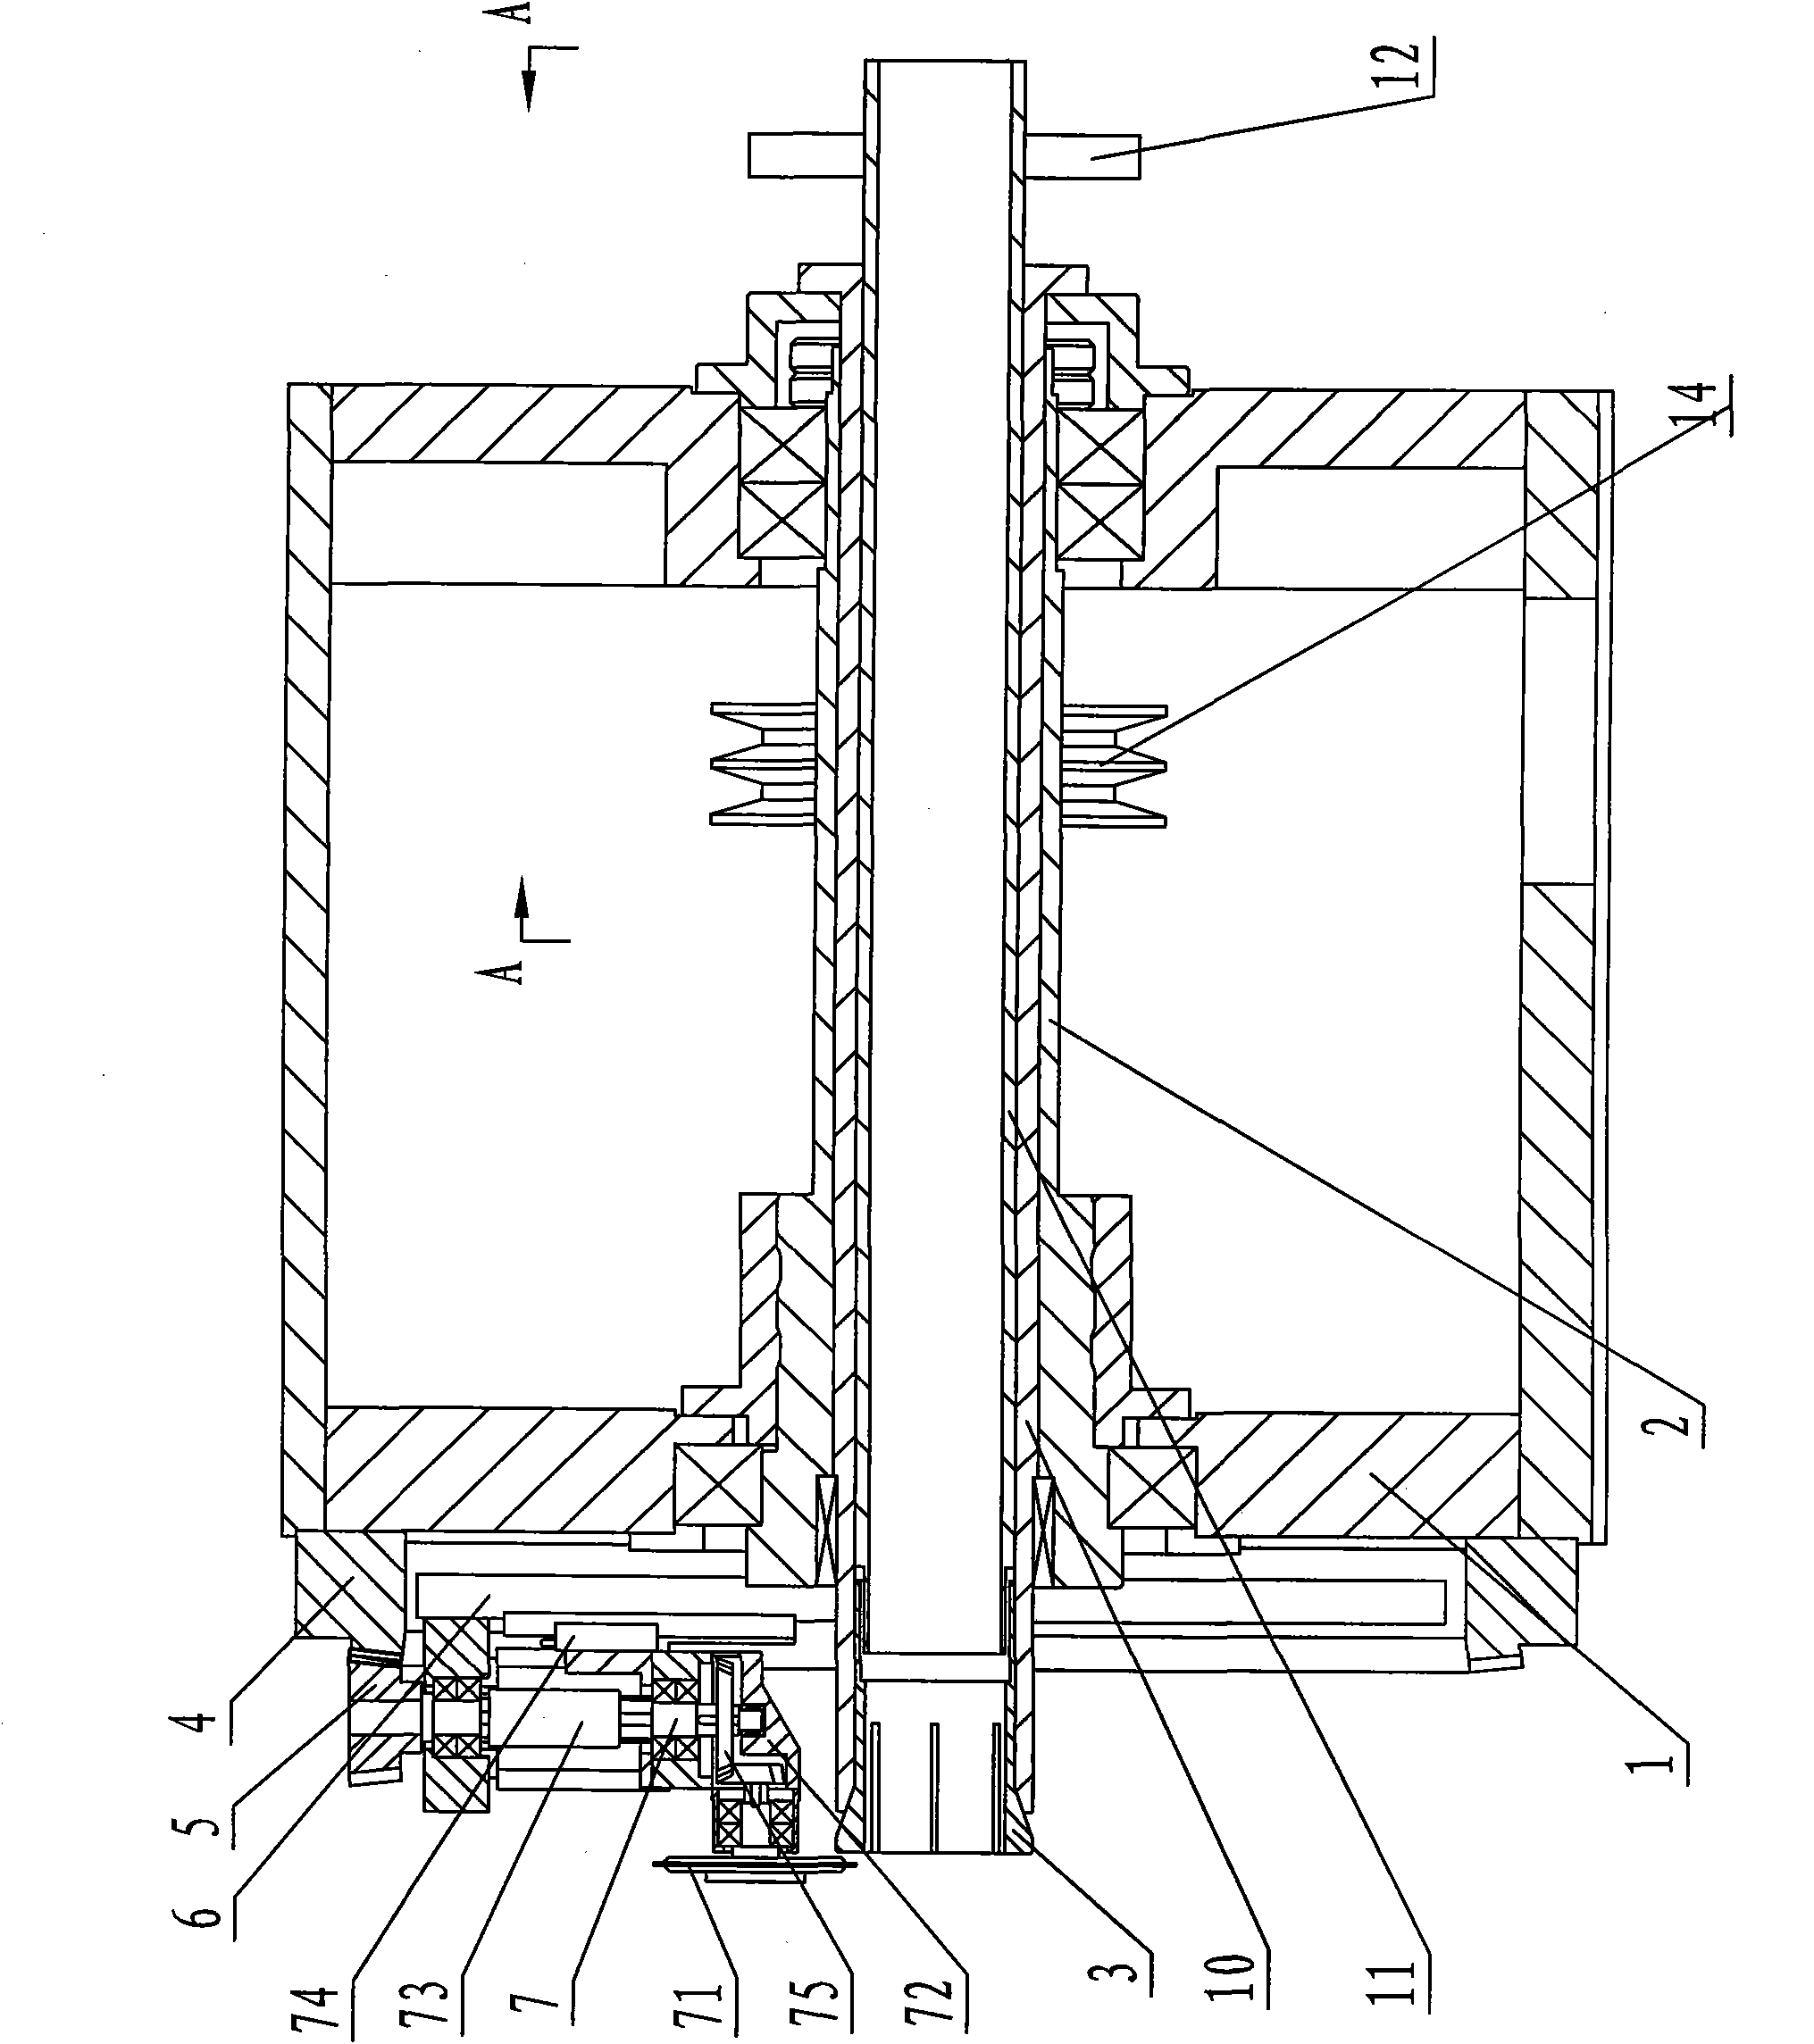 Full-automatic pipe cutting machine